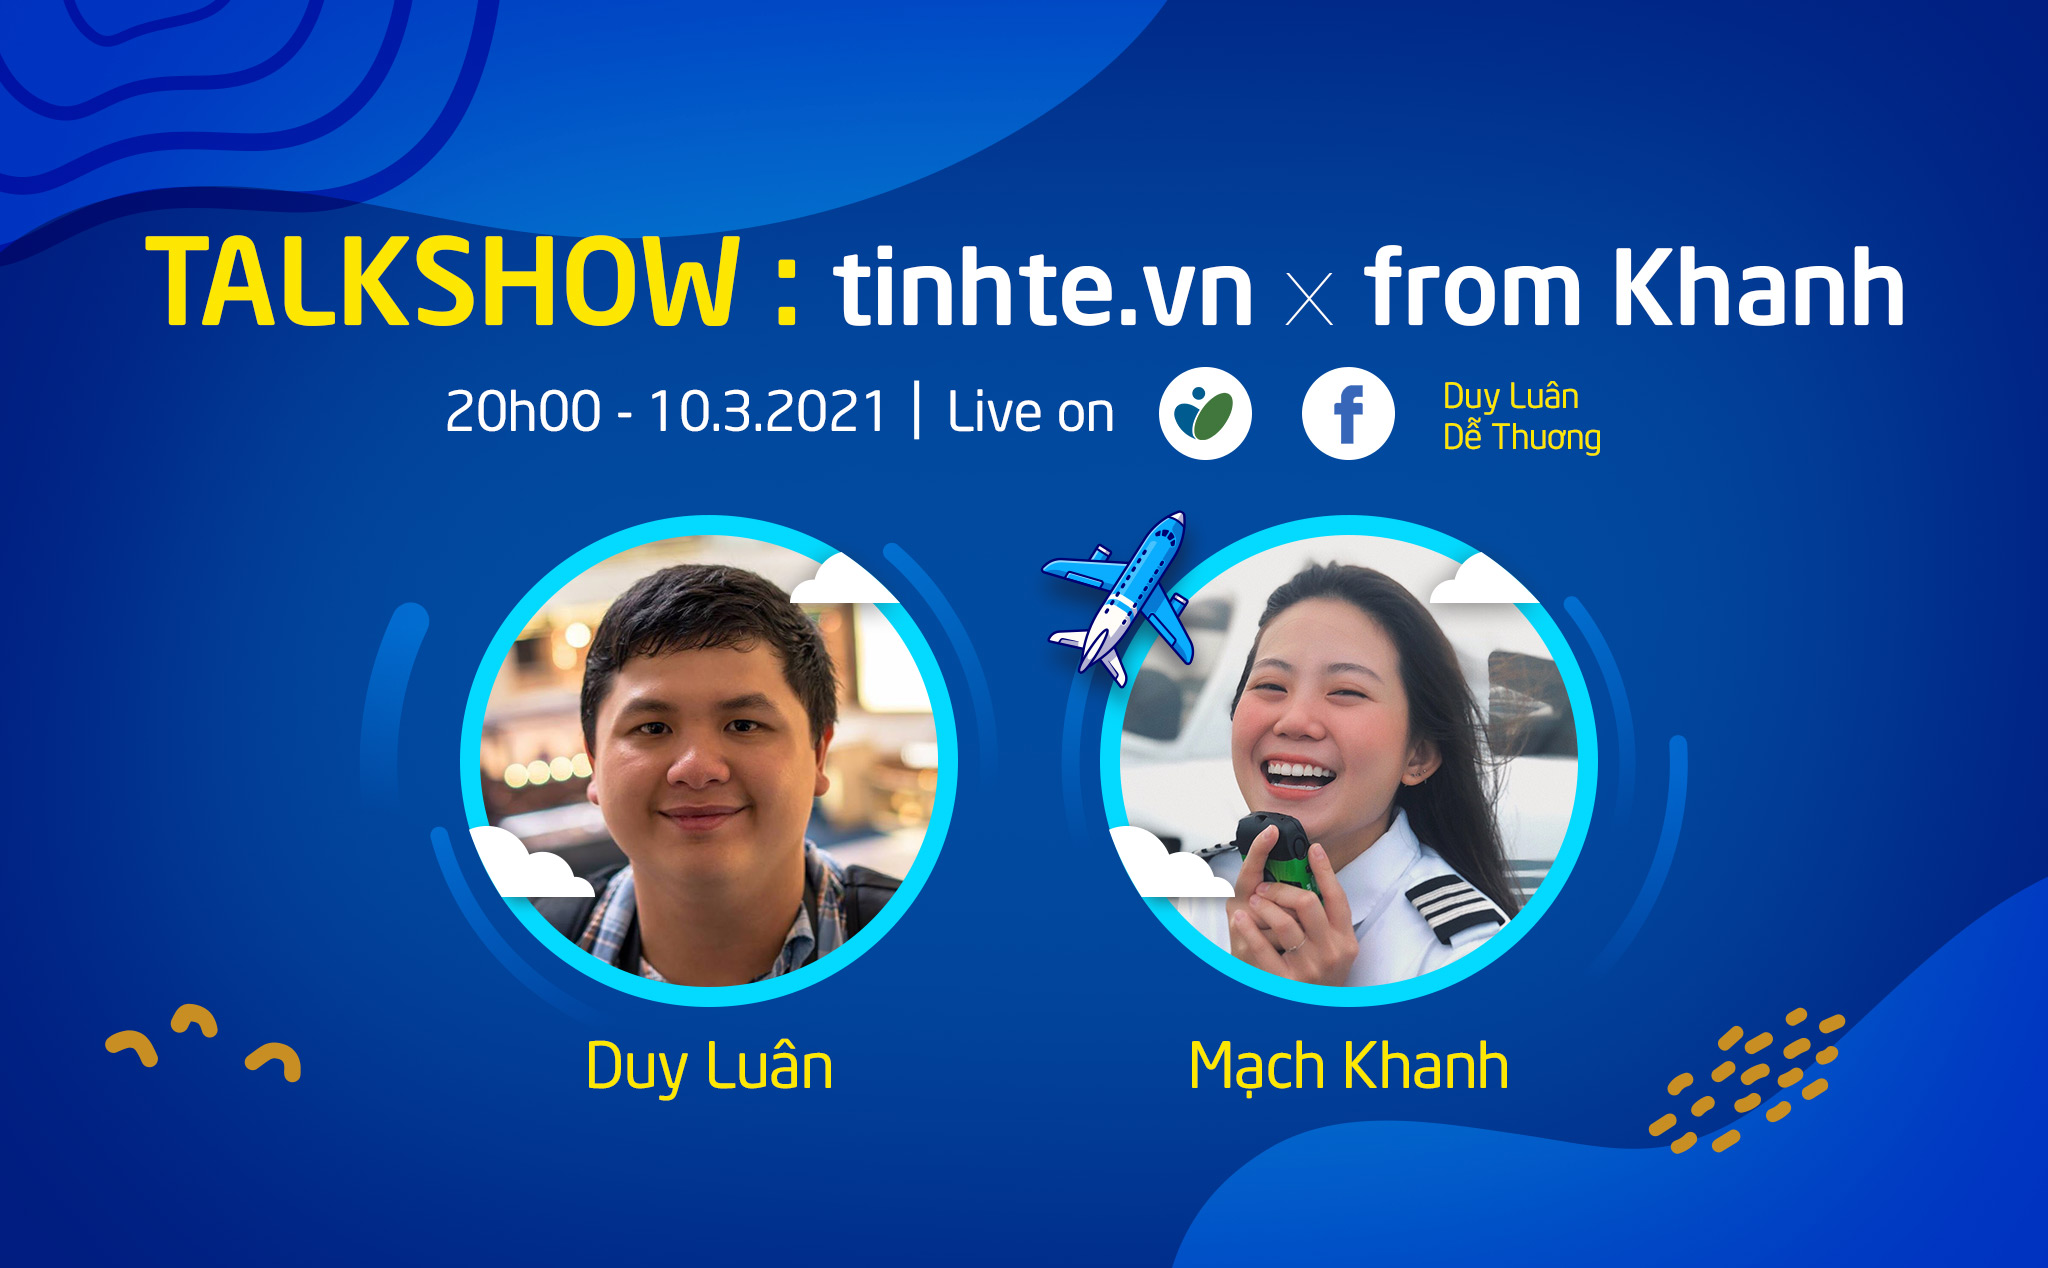 8pm tối nay: livestream giao lưu với Mạch Khanh